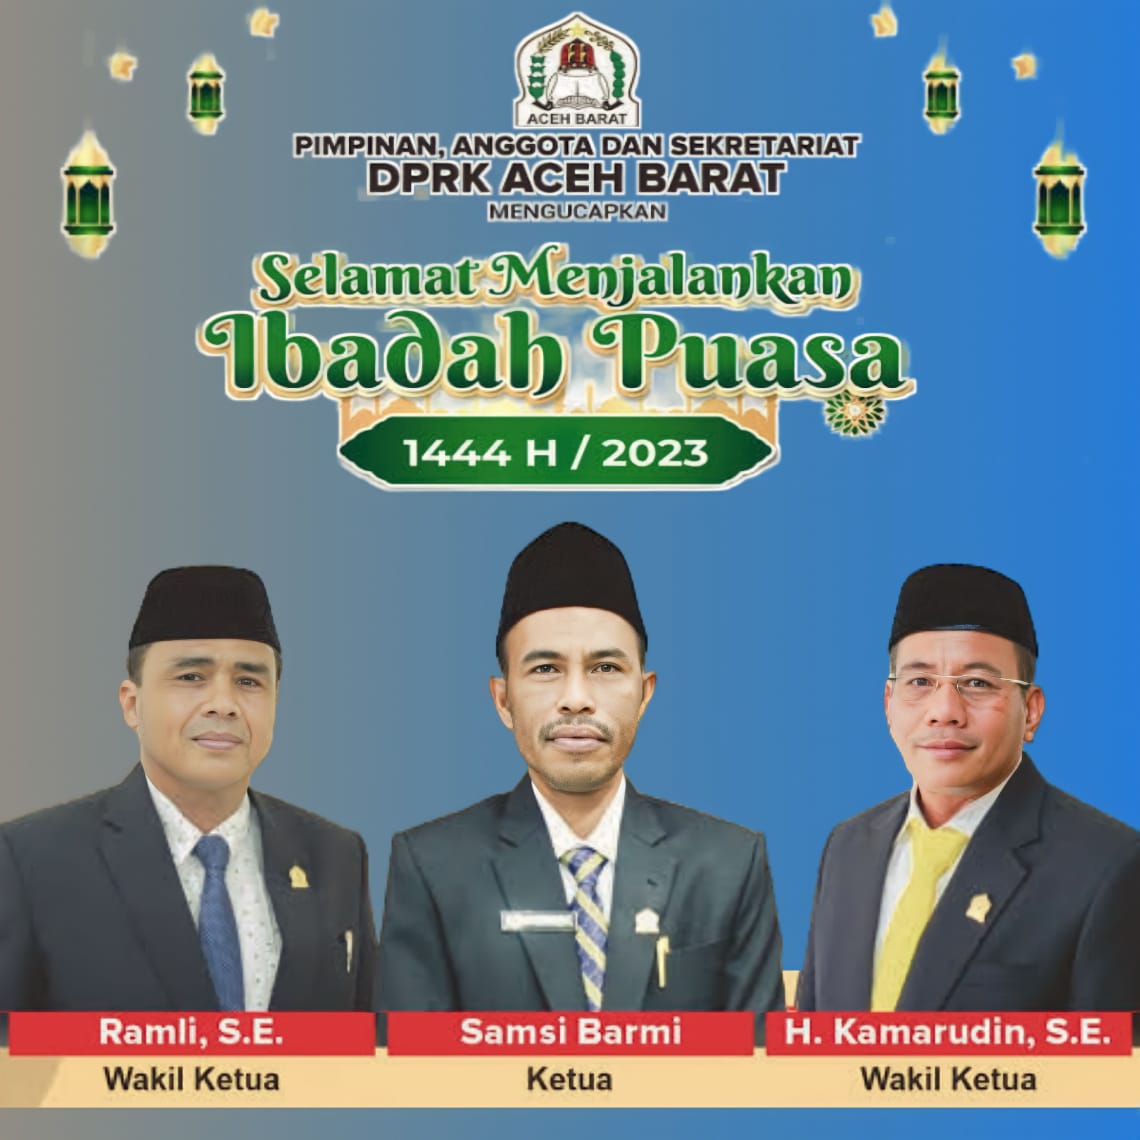 Iklan ucapan selamat menunaikan ibadah puasa di bulan suci Ramadhan 1444 H dari DPR Kabupaten Aceh Barat